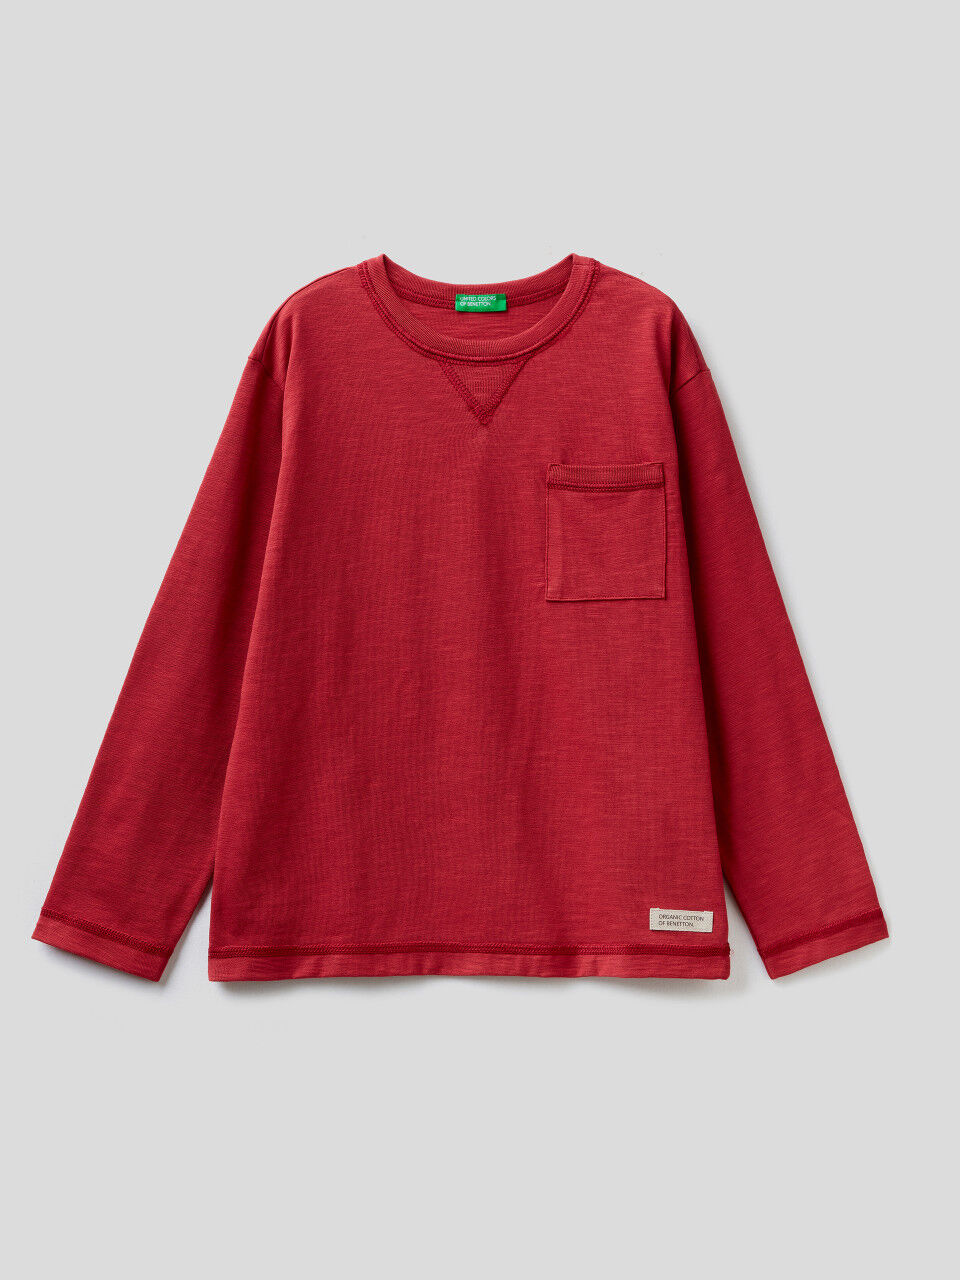 7-8 anni Bambini Abbigliamento bambino Altro abbigliamento bambino United Colors of Benetton Altro abbigliamento bambino Maglione di lana rosso 